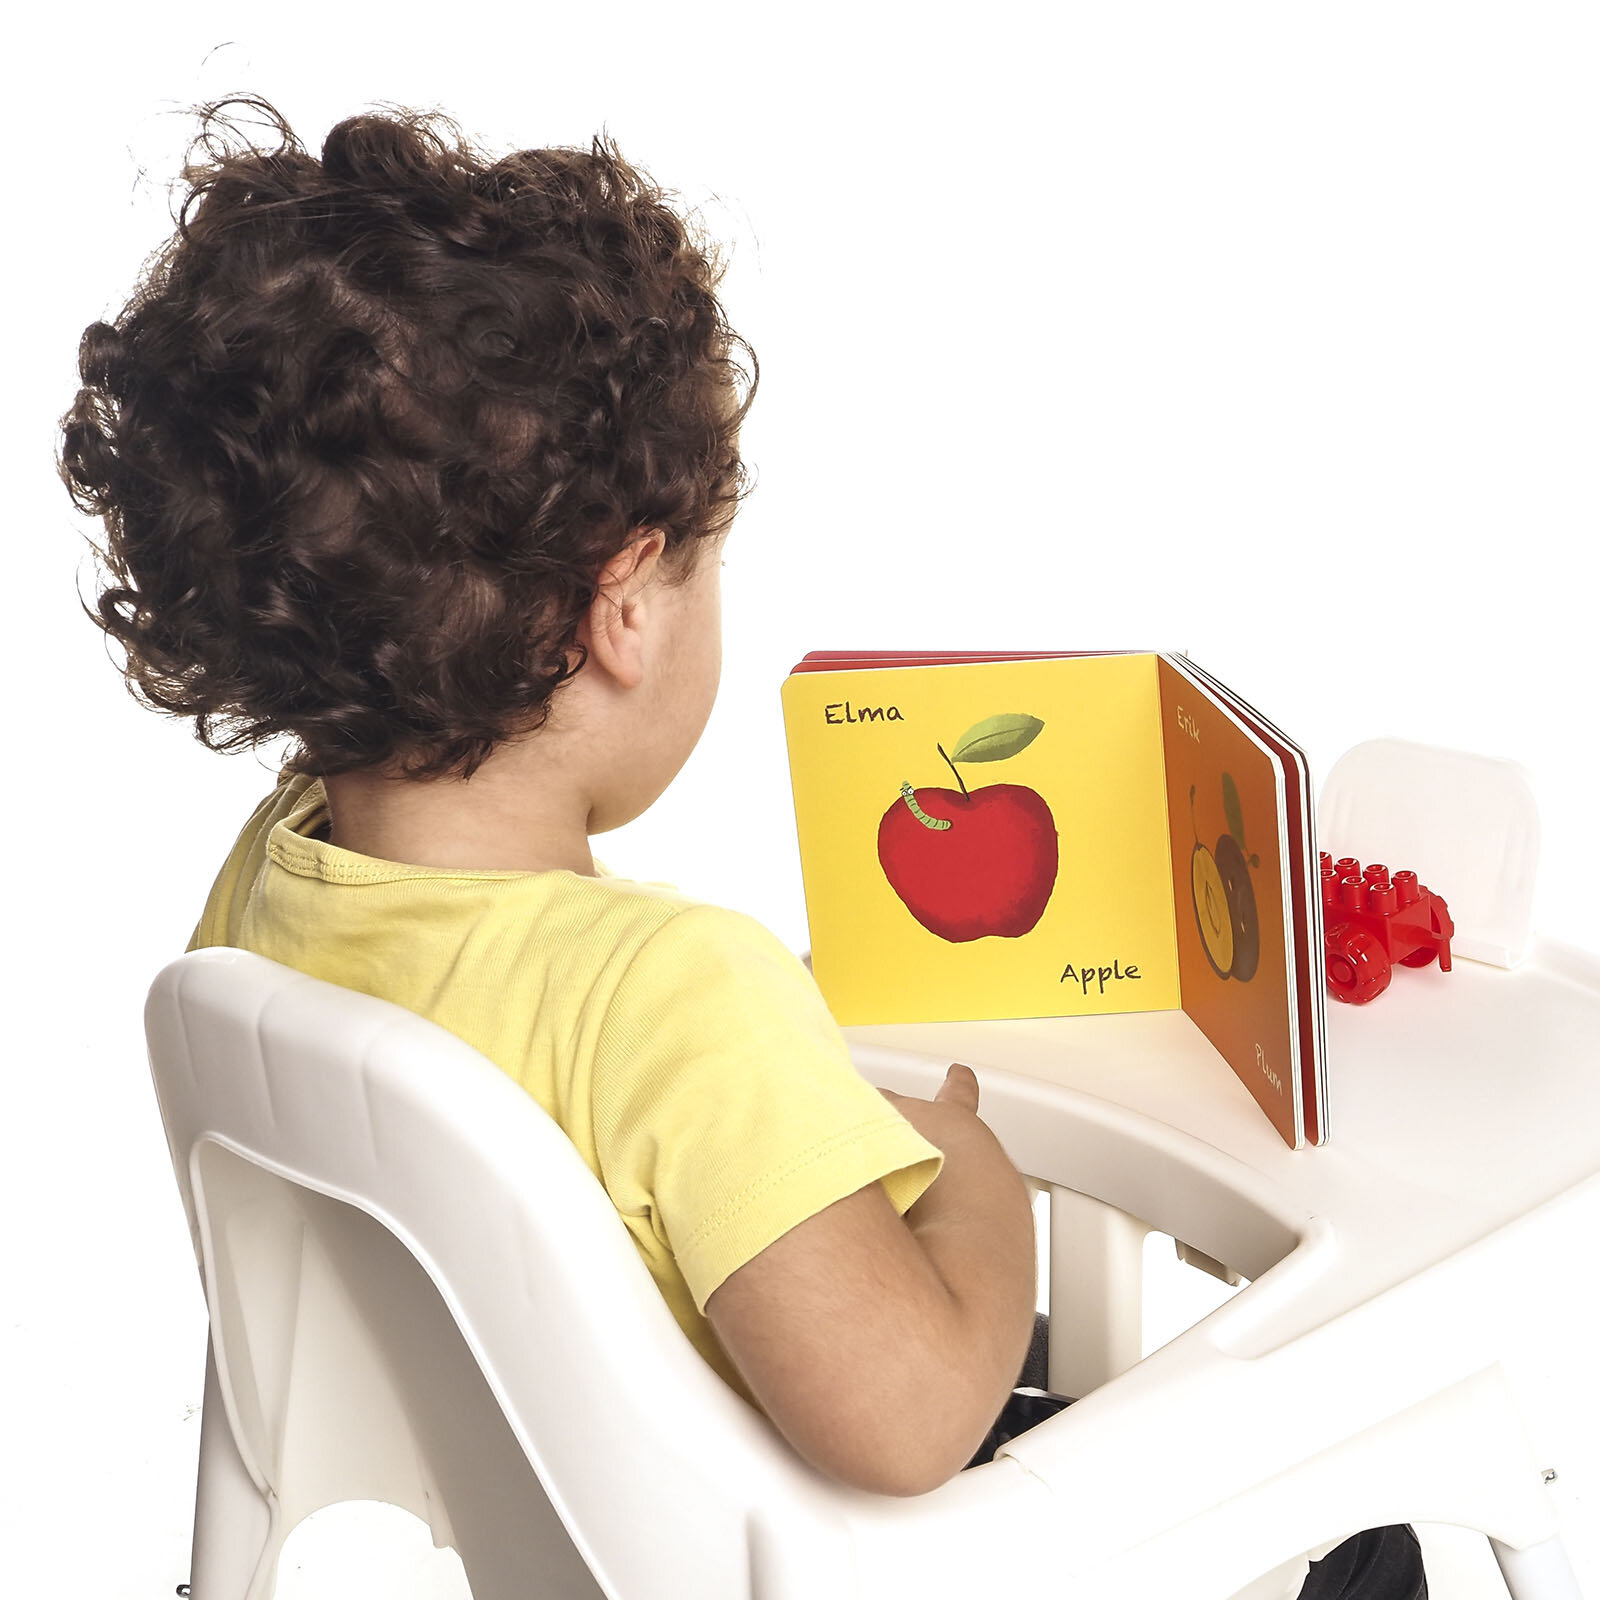 Uçanfil Meyveler Eğitici Bebek Kitabı